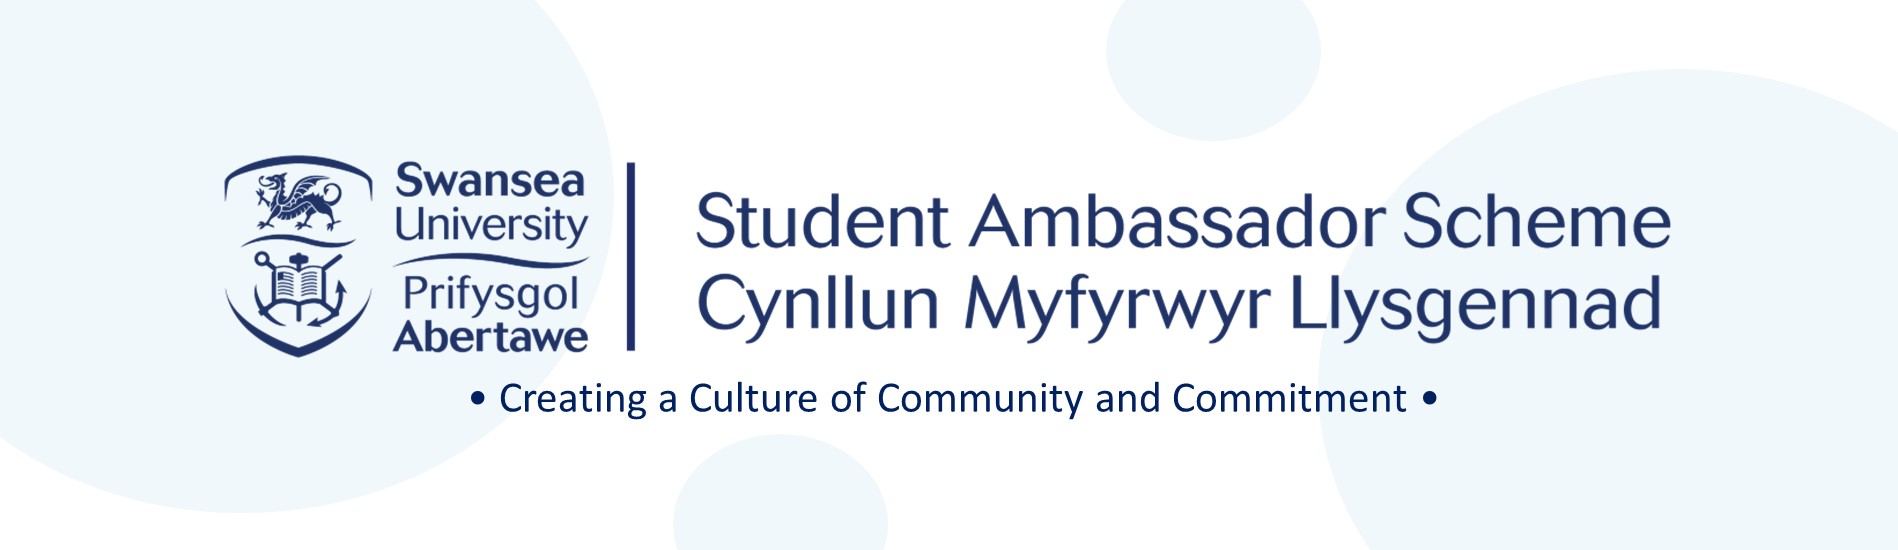 Student Ambassador Scheme Logo Reads
Swansea University Student Ambassador Scheme
Prifysgol Abertawe Cynllun Myfyrwyr Llysgennad
Creating a Culture of Community and Commitment